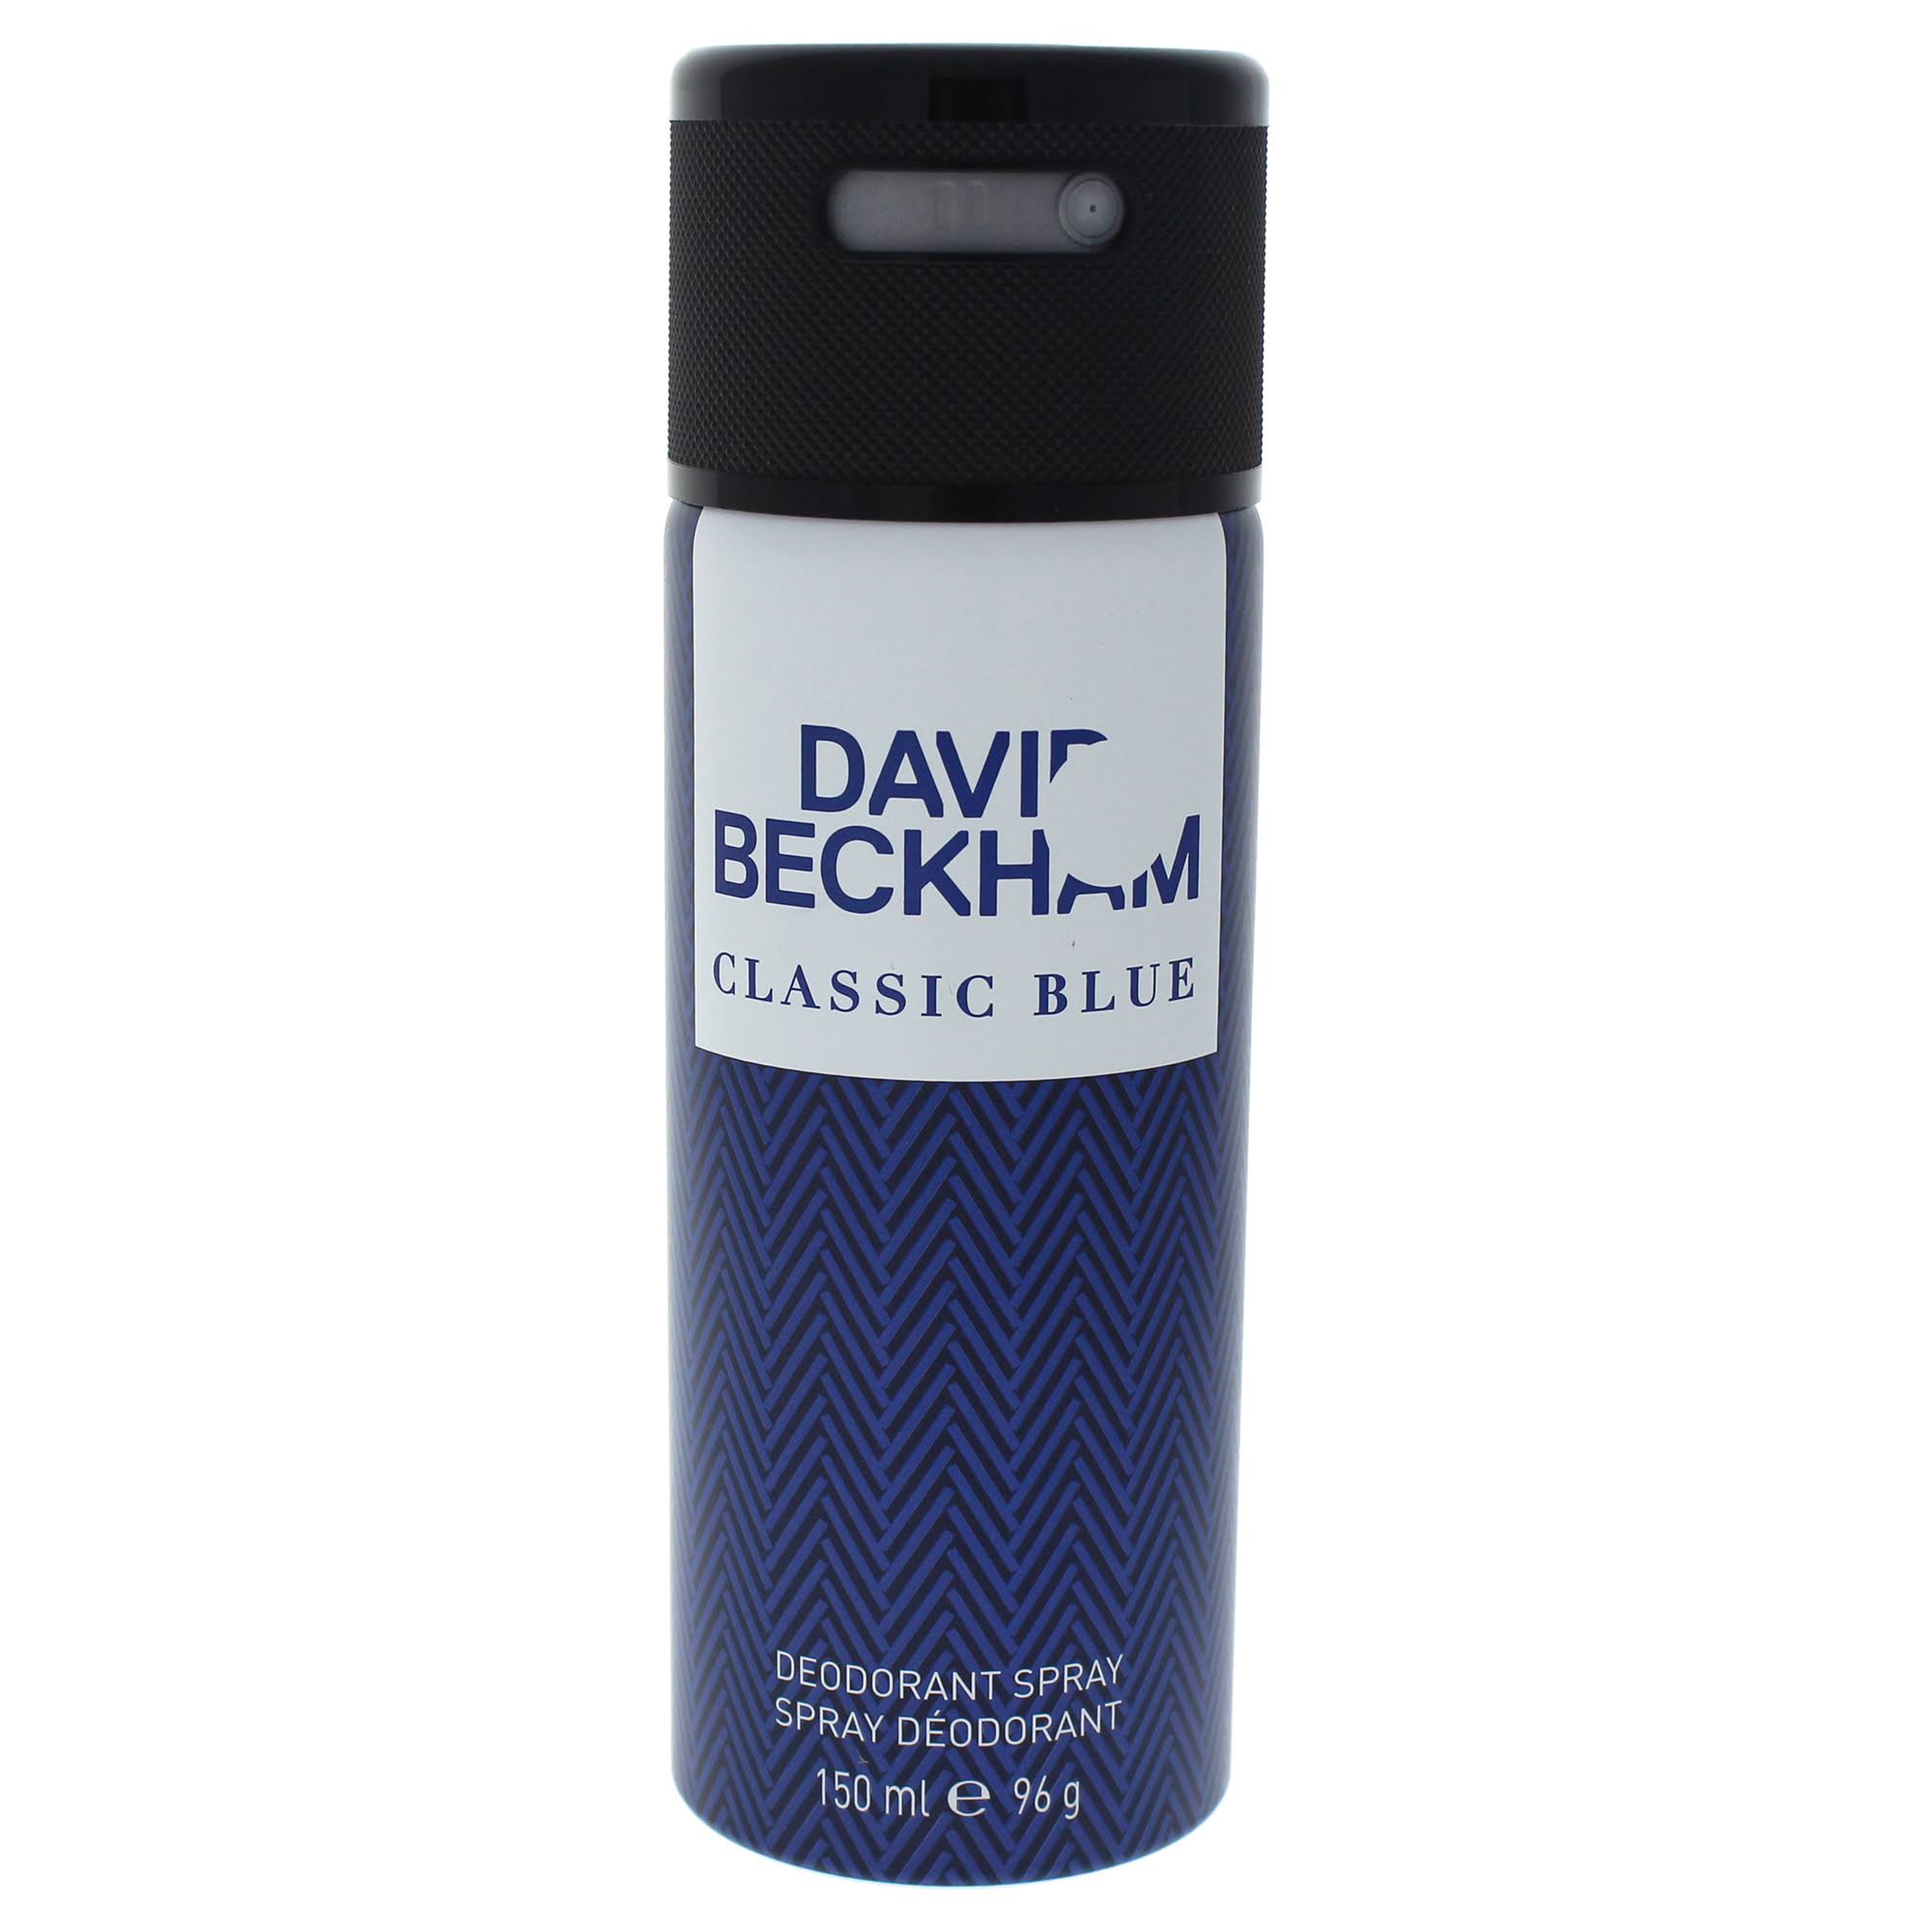 David Beckham Classic Blue for Men Deodorant Spray - 150ml